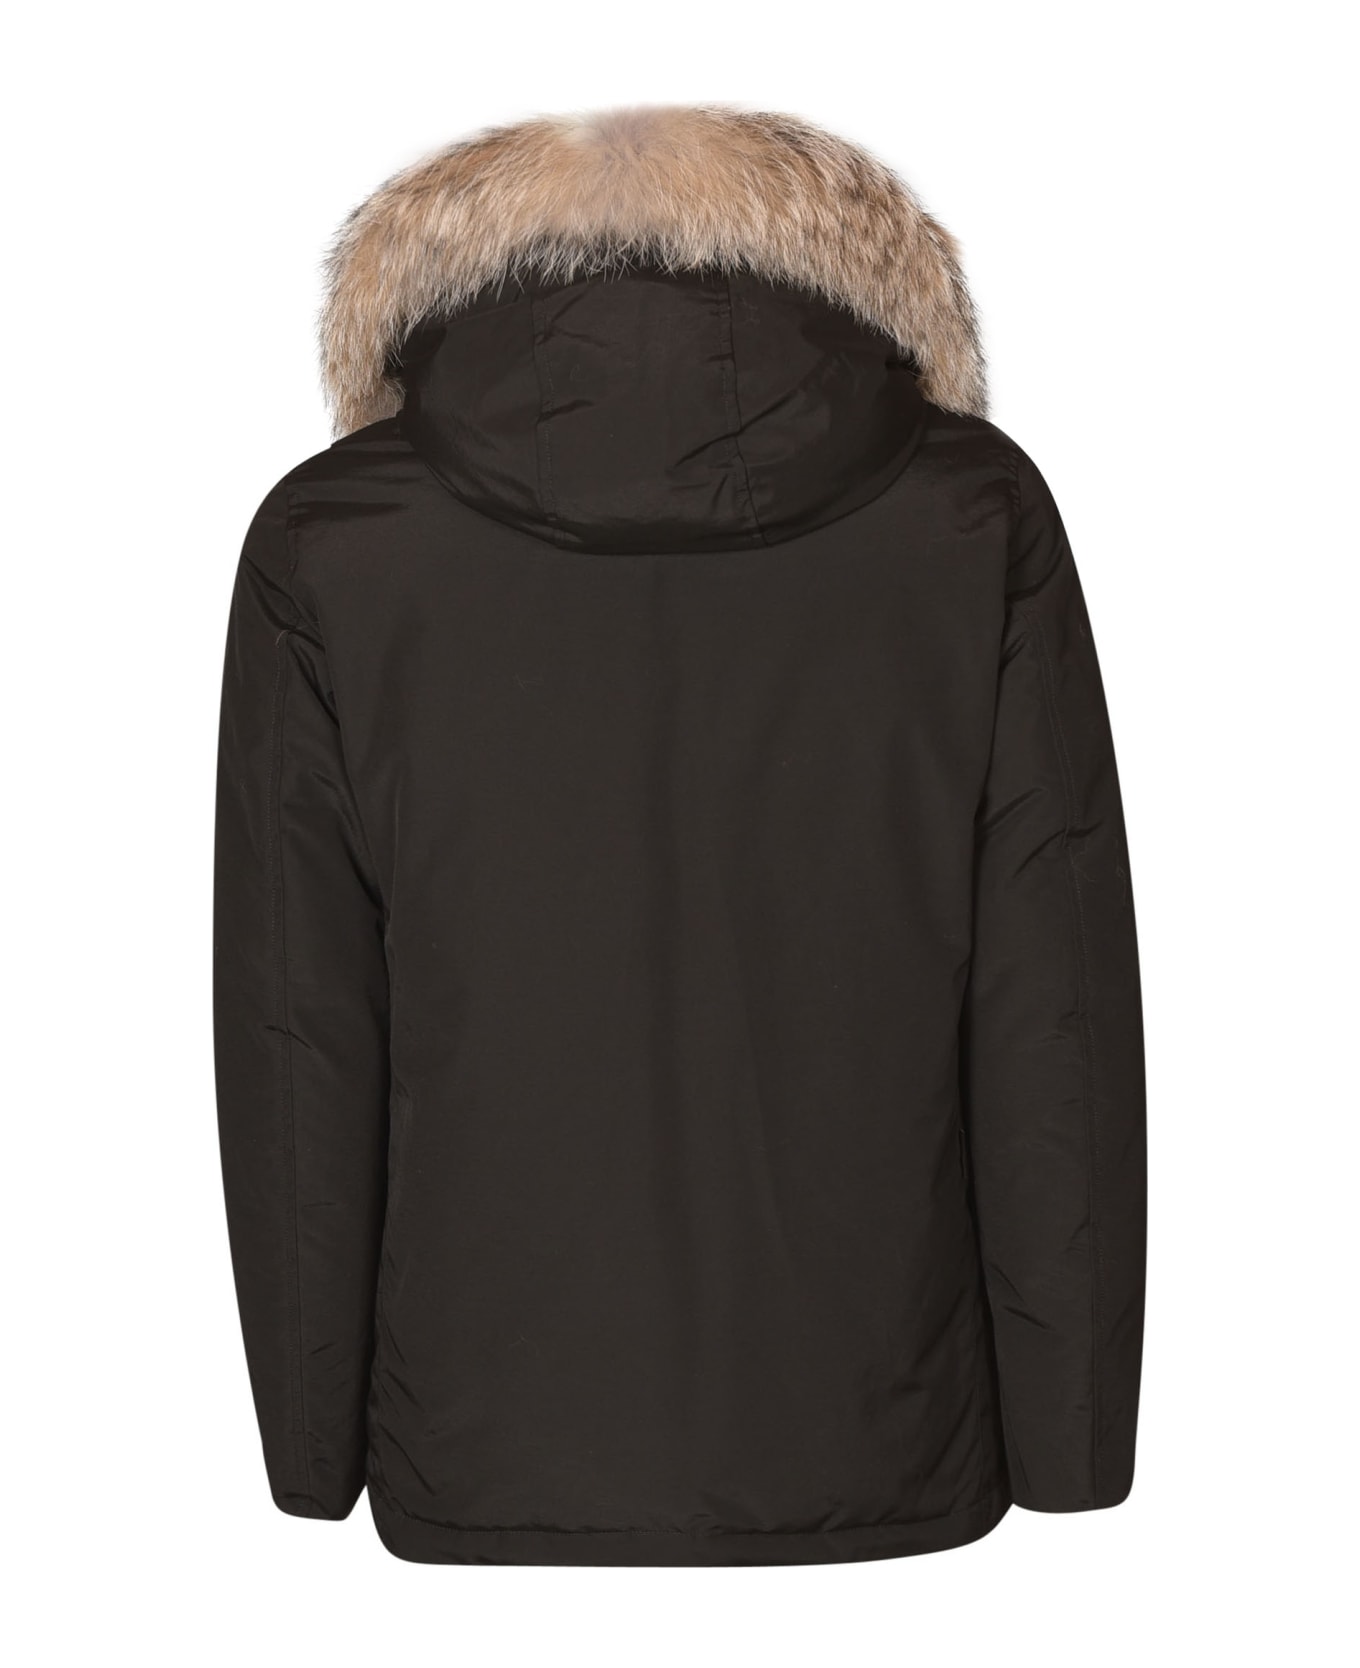 Woolrich Arctic Detachable Fur Parka - Black